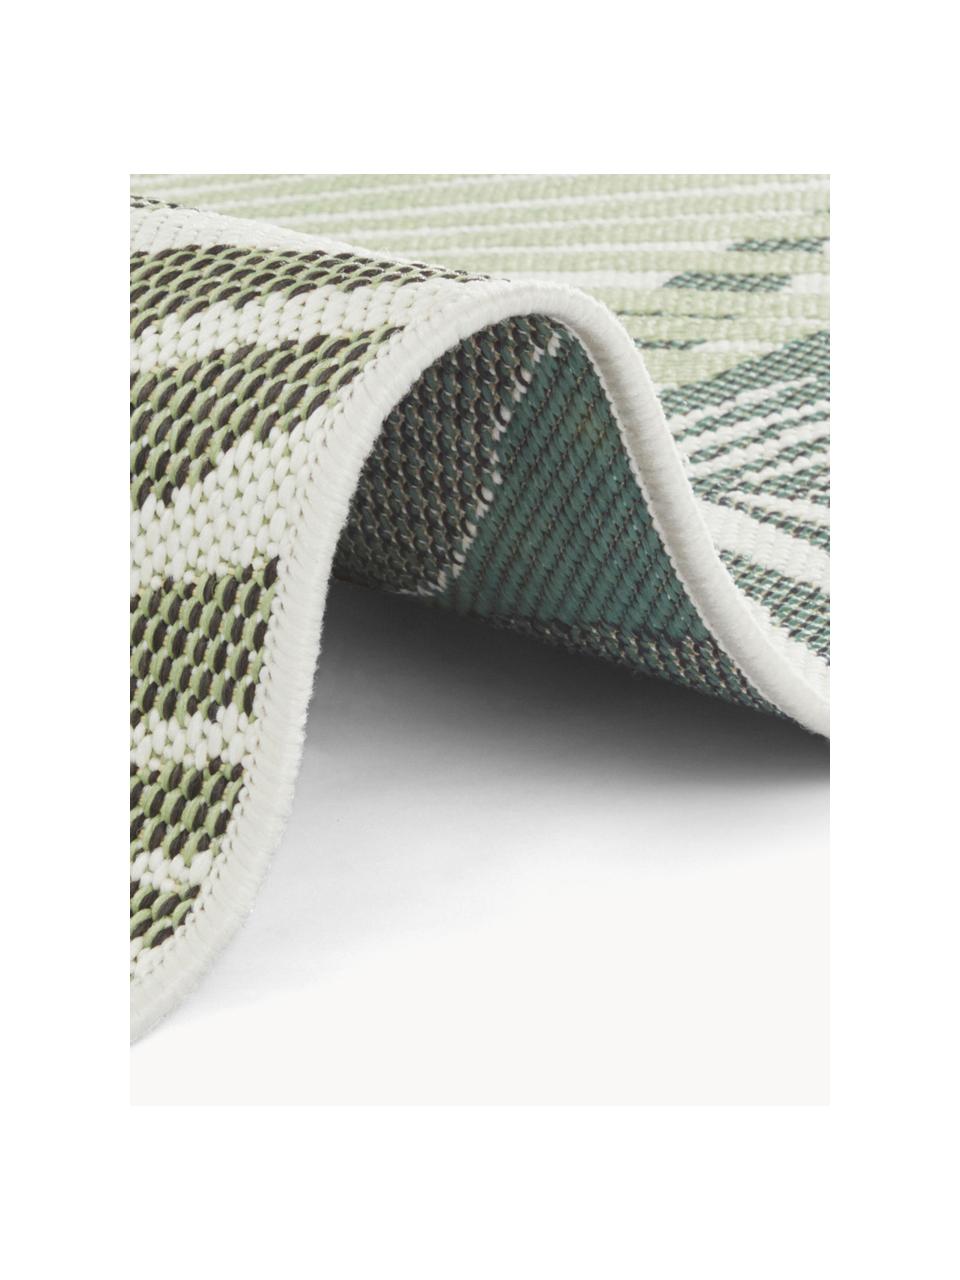 Interiérový/exteriérový koberec se vzorem listů Vai, 100 % polypropylen 

Materiál použitý v tomto produktu byl testován na škodlivé látky a certifikován podle STANDARD 100 od OEKO-TEX®1803035, Centexbel., Odstíny zelené, bílá, Š 80 cm, D 150 cm (velikost XS)